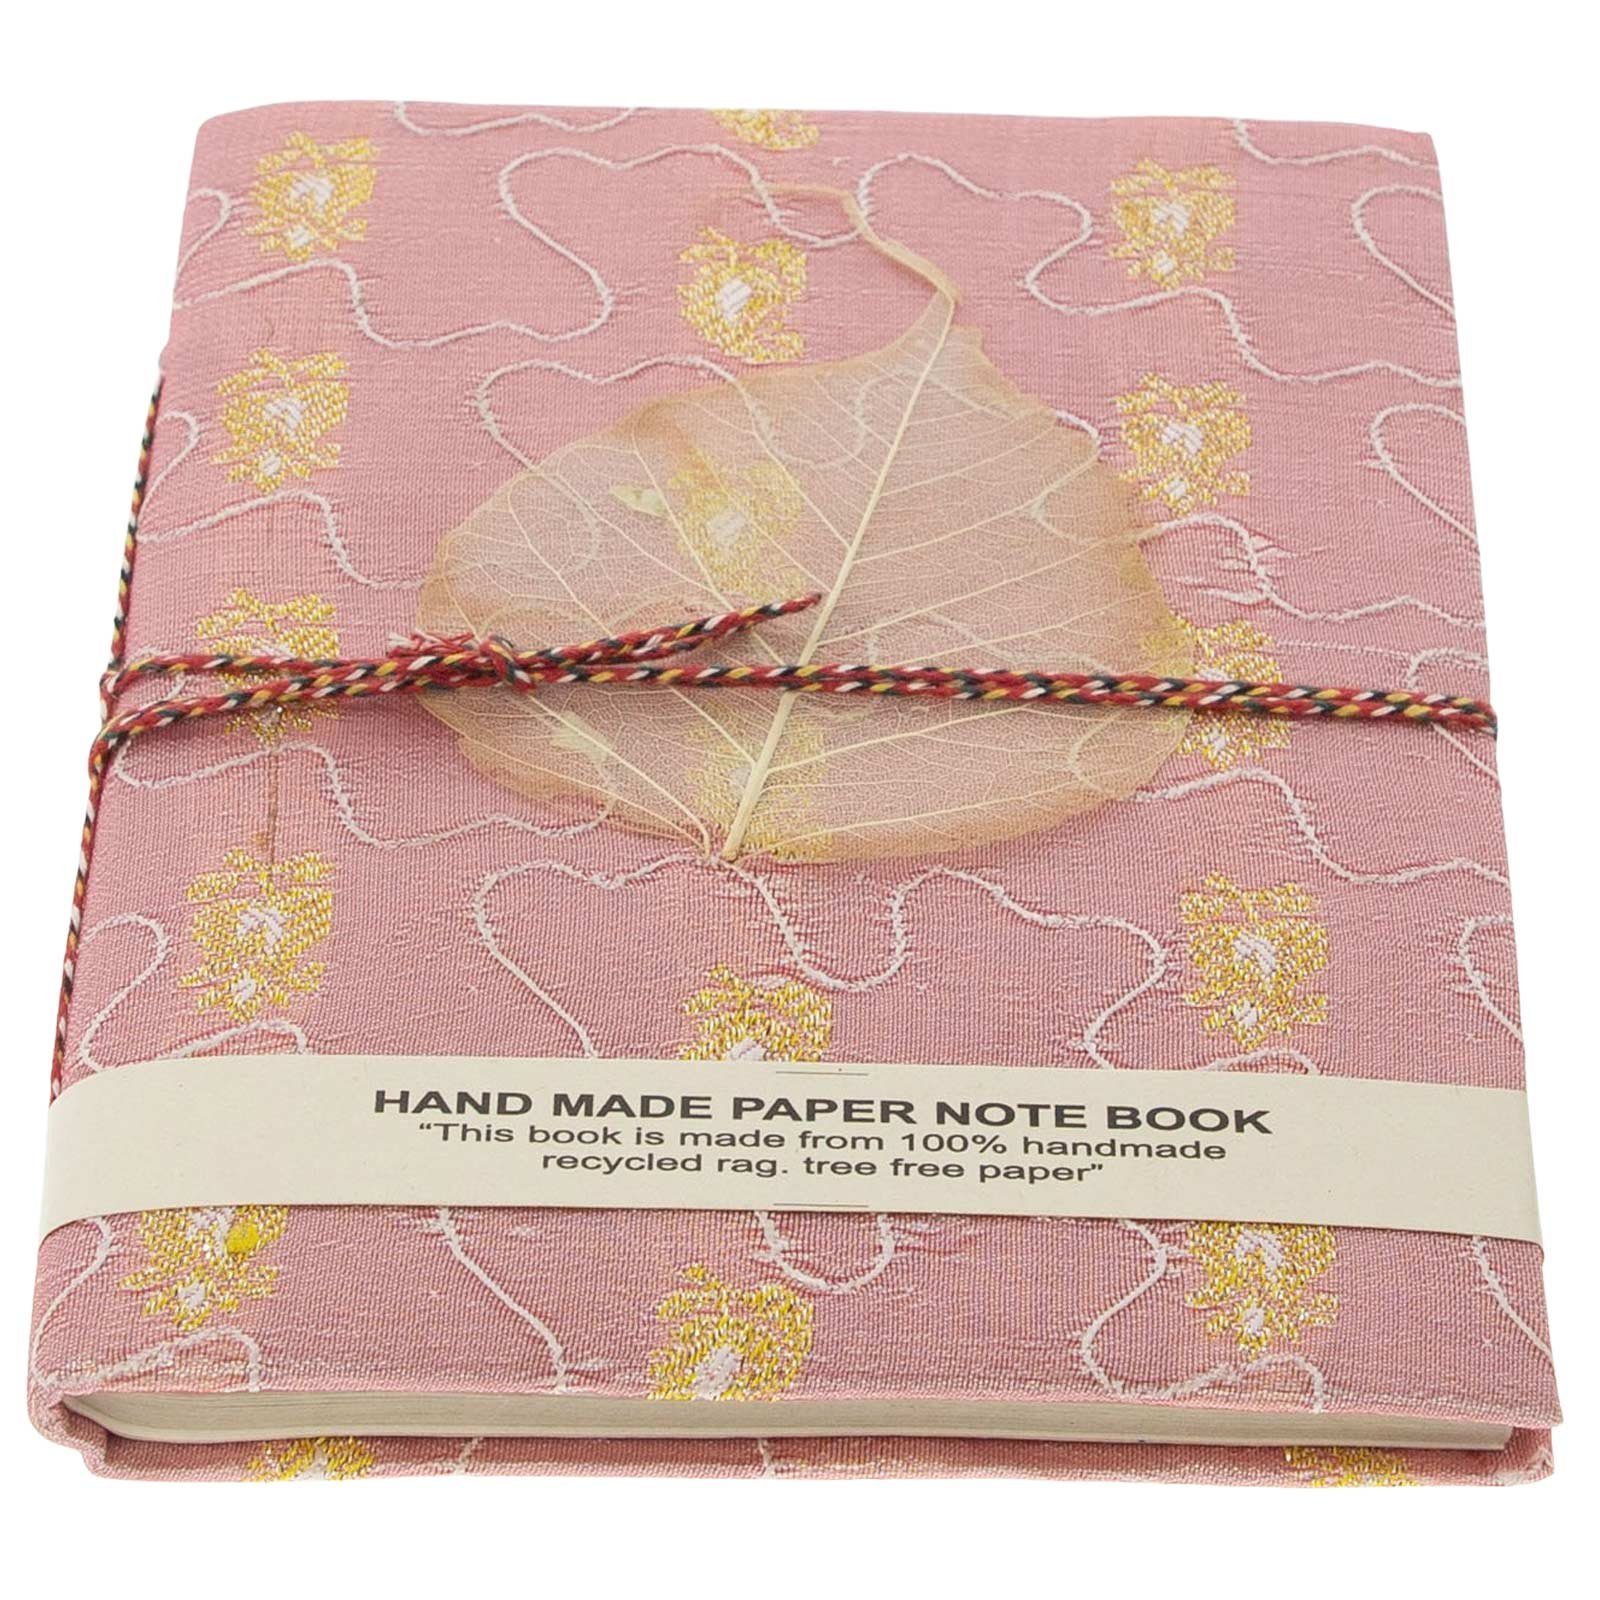 Neuer Produktshop KUNST UND MAGIE Tagebuch Tagebuch Sari 20x15cm Poesie Baumwollpapier-Notizbuch handgefertigt